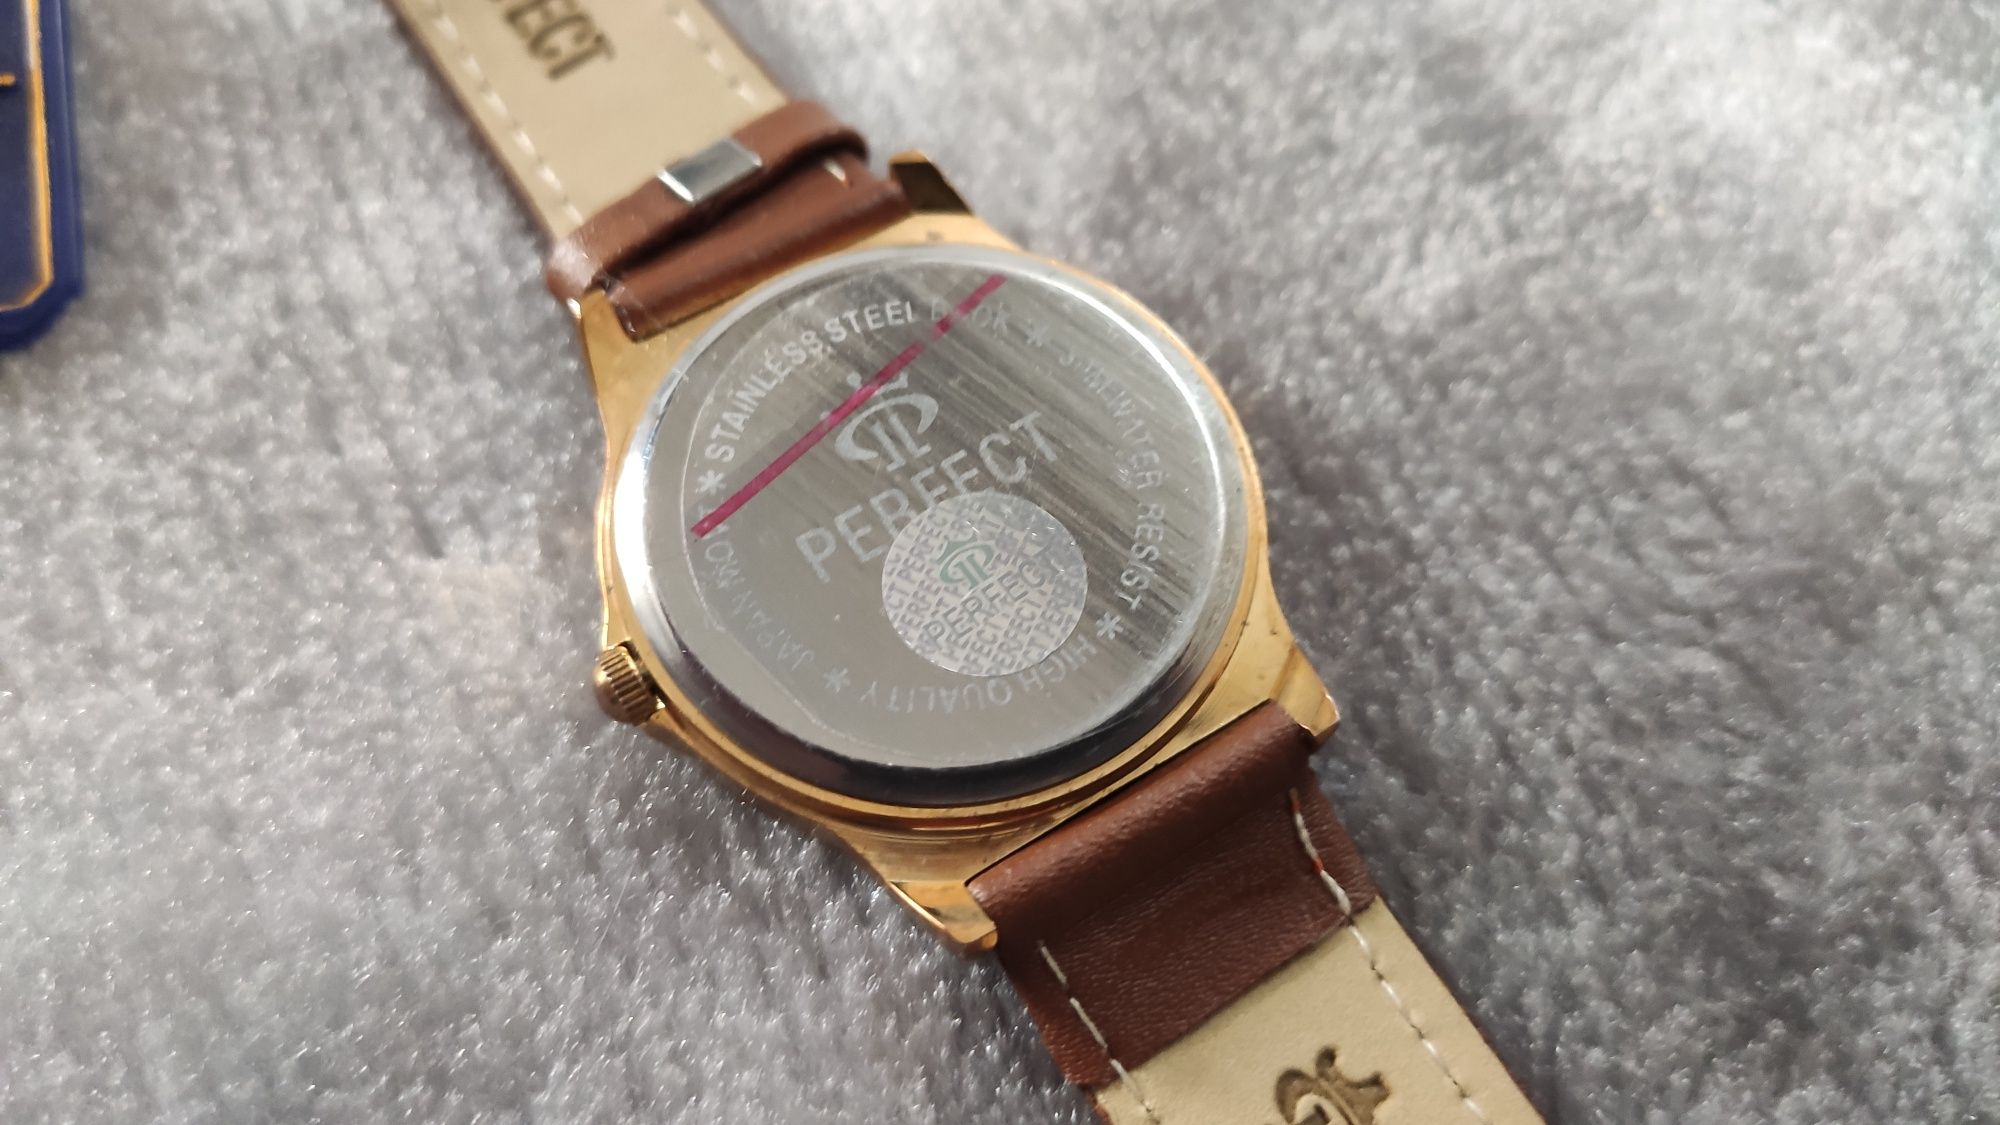 Zegarek ręczny męski Perfect stal nierdzewna, skórzany pasek Japan 30m